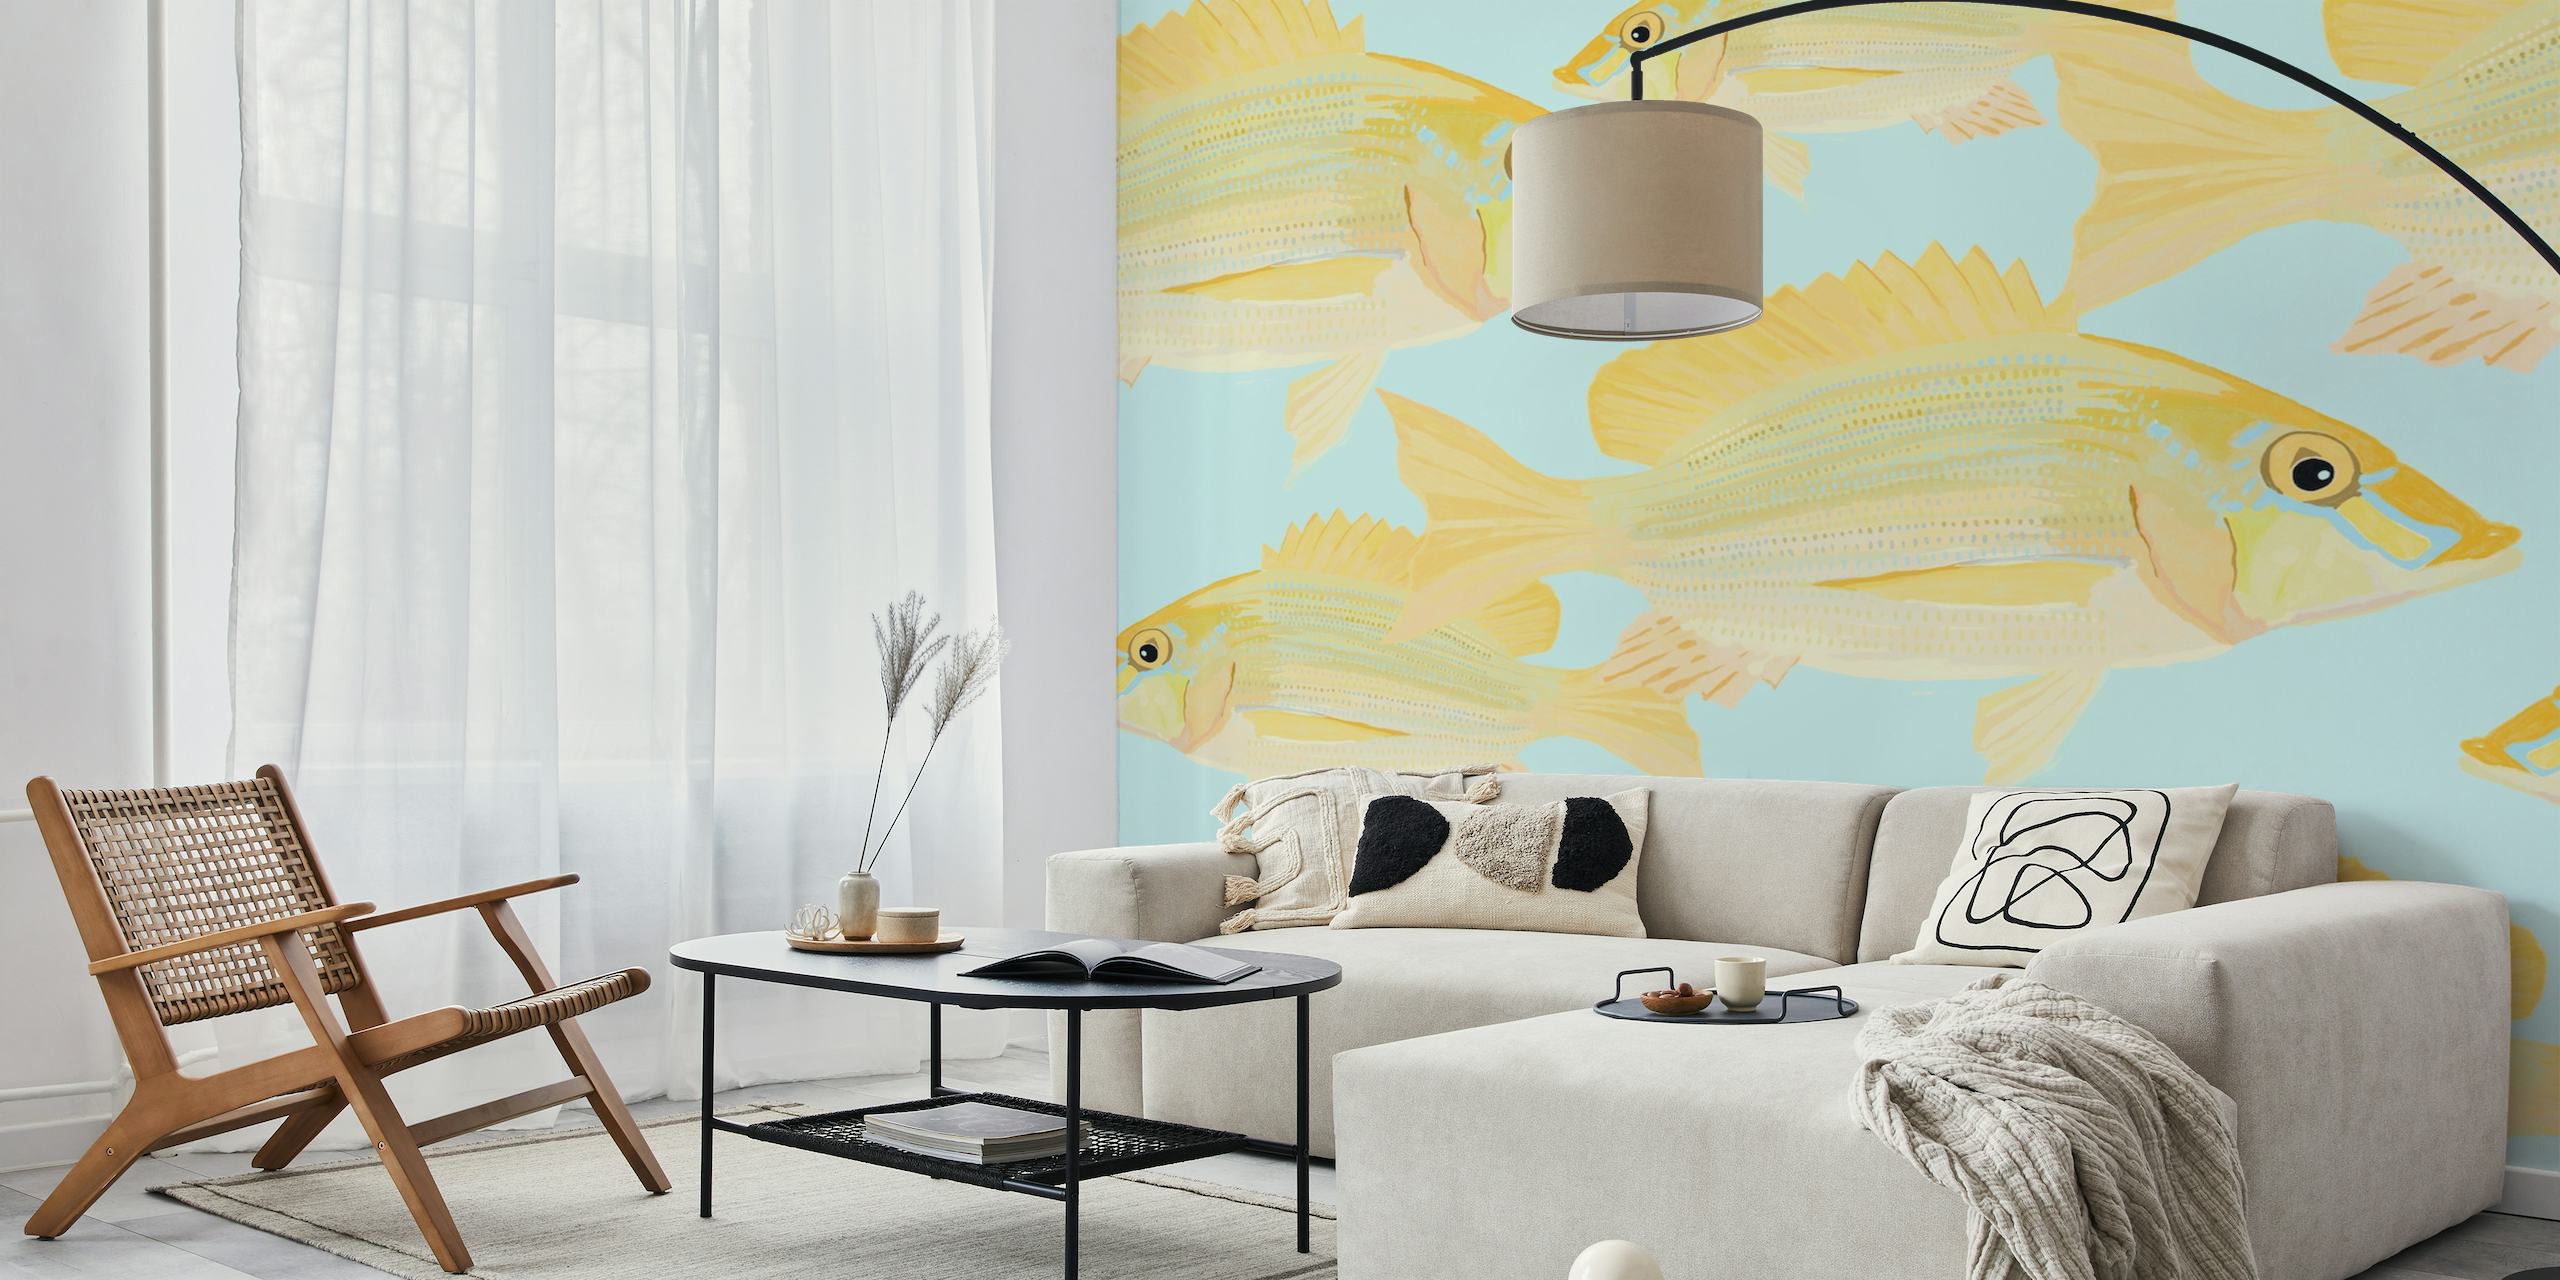 Zidna slika s uzorkom ribe pješčane deverike s estetikom akvarela na suptilnoj pozadini